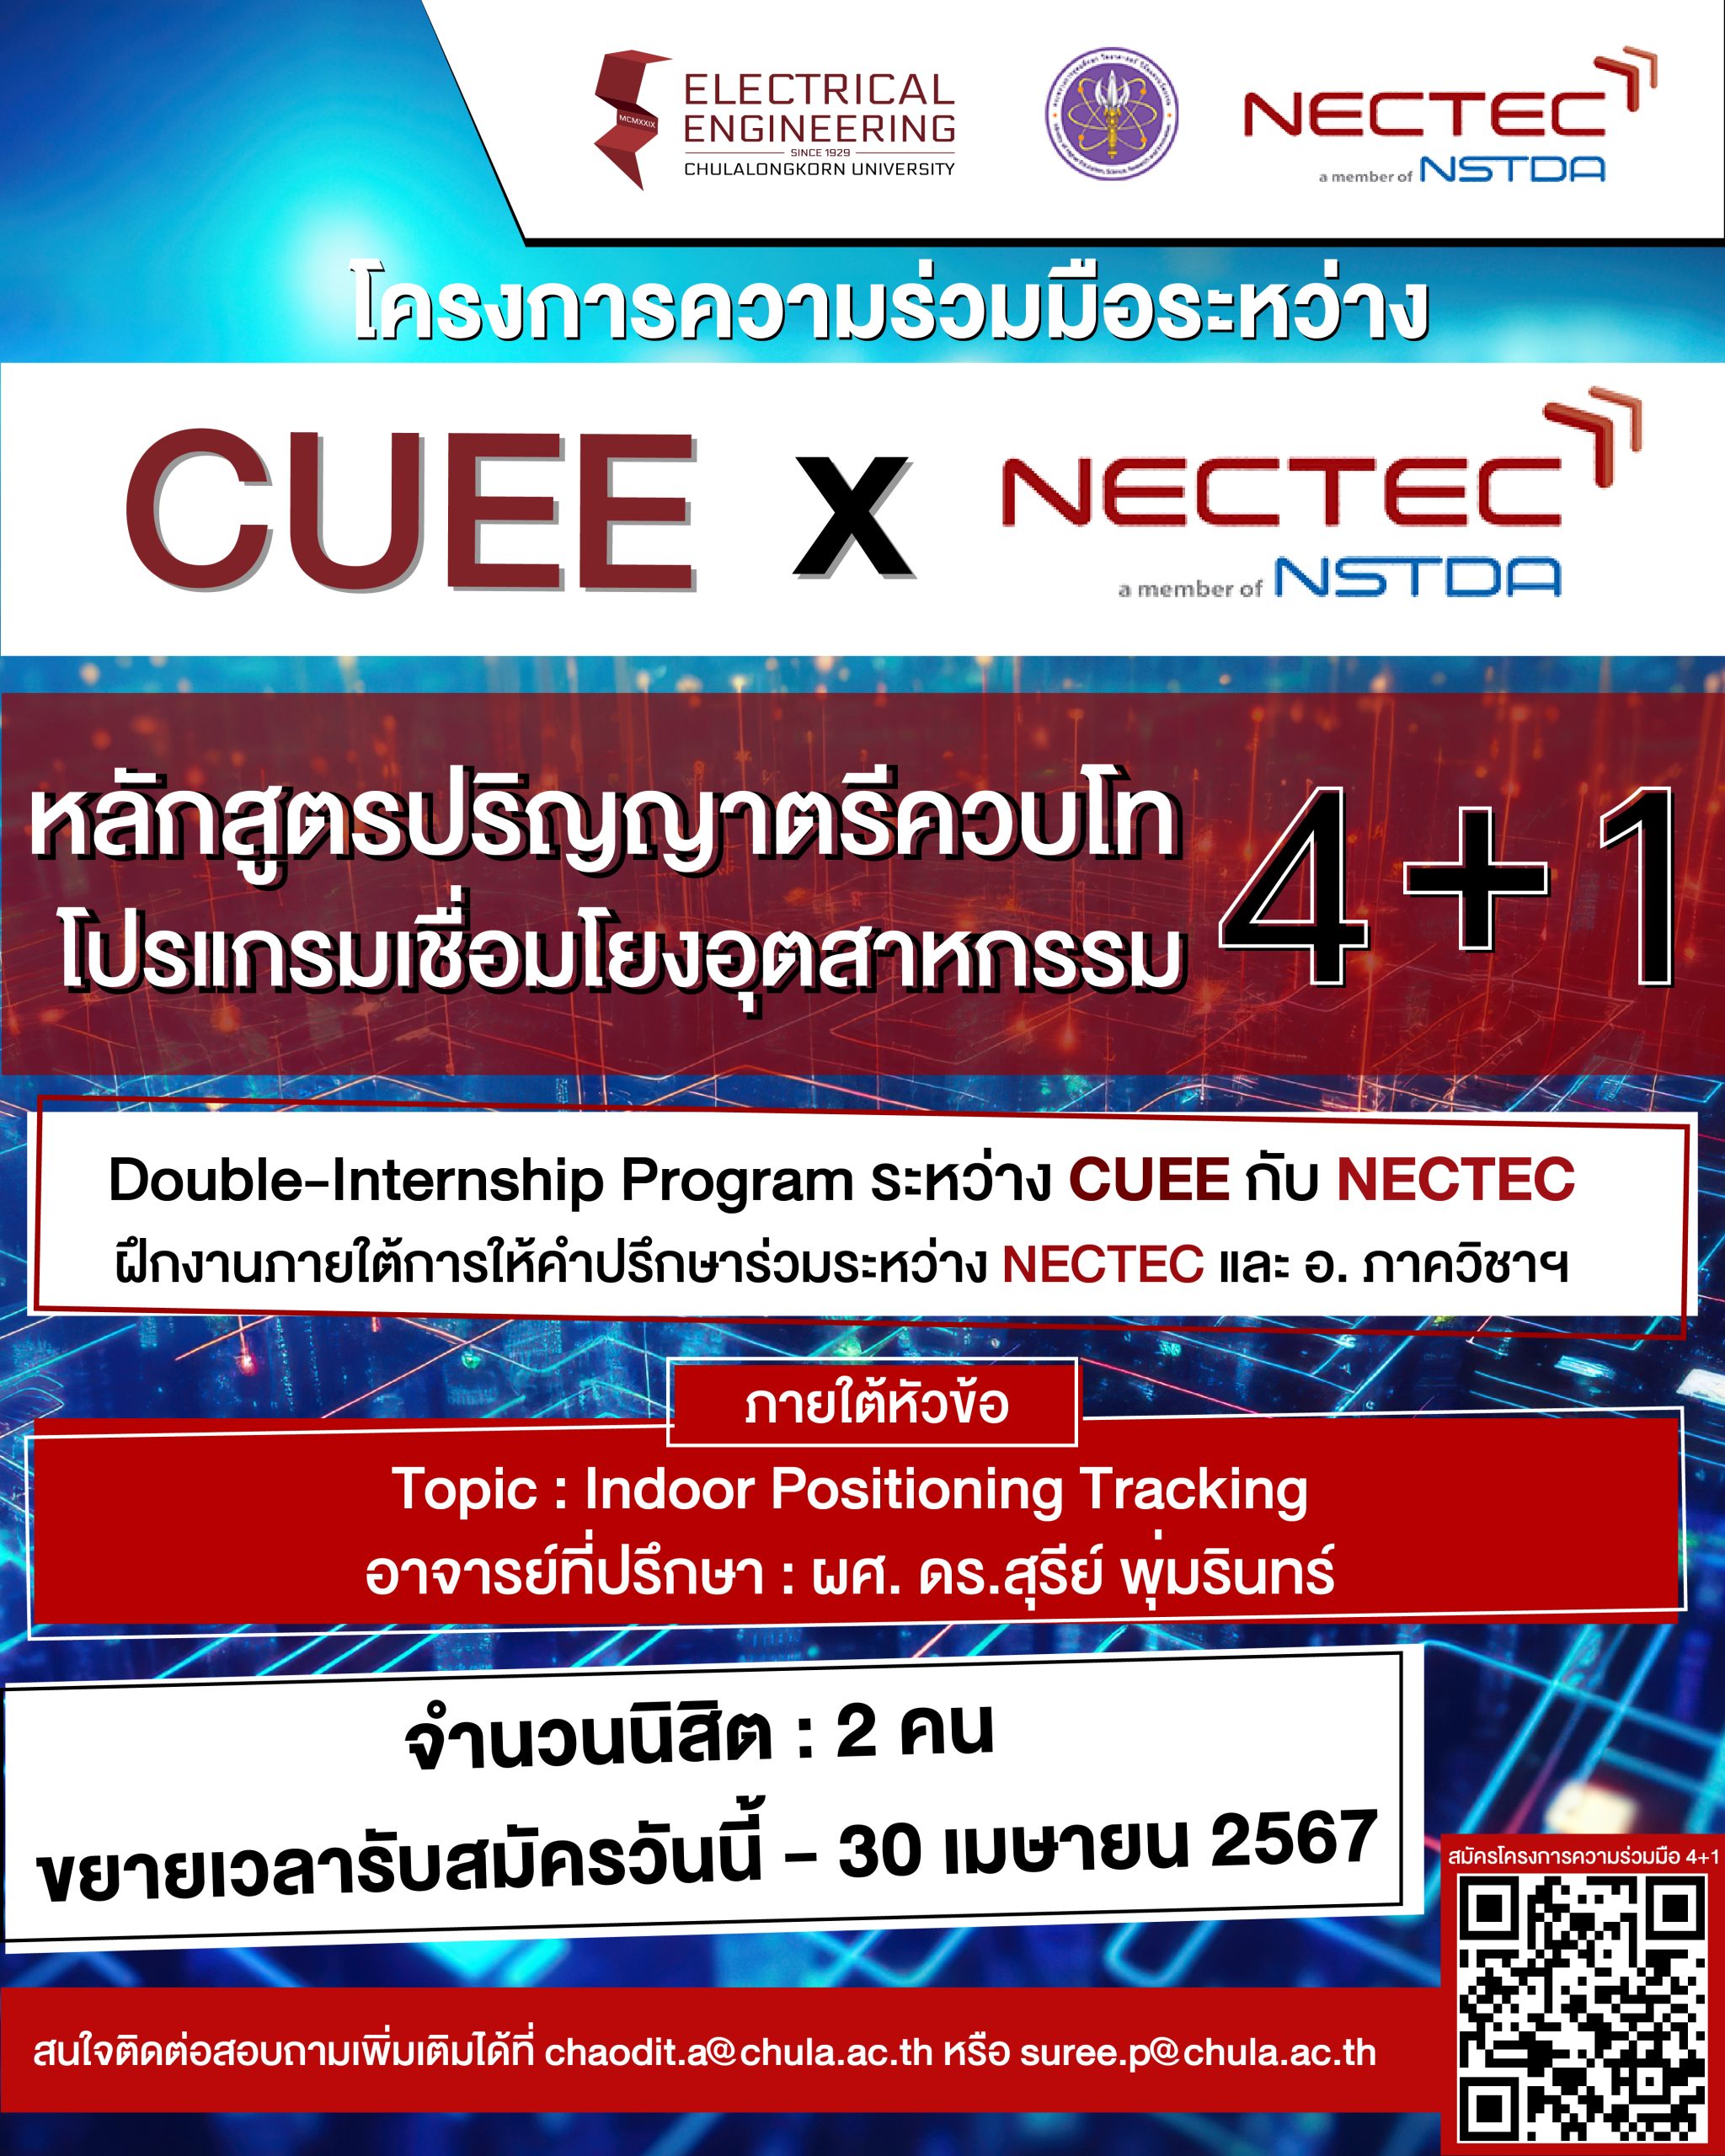 ขยายเวลารับสมัครหลักสูตรปริญญาตรีควบโท 4+1 โปรแกรมเชื่อมโยงอุตสาหกรรม CUEE x NECTEC สมัครตั้งแต่วันนี้ – 30 เมษายน 2567